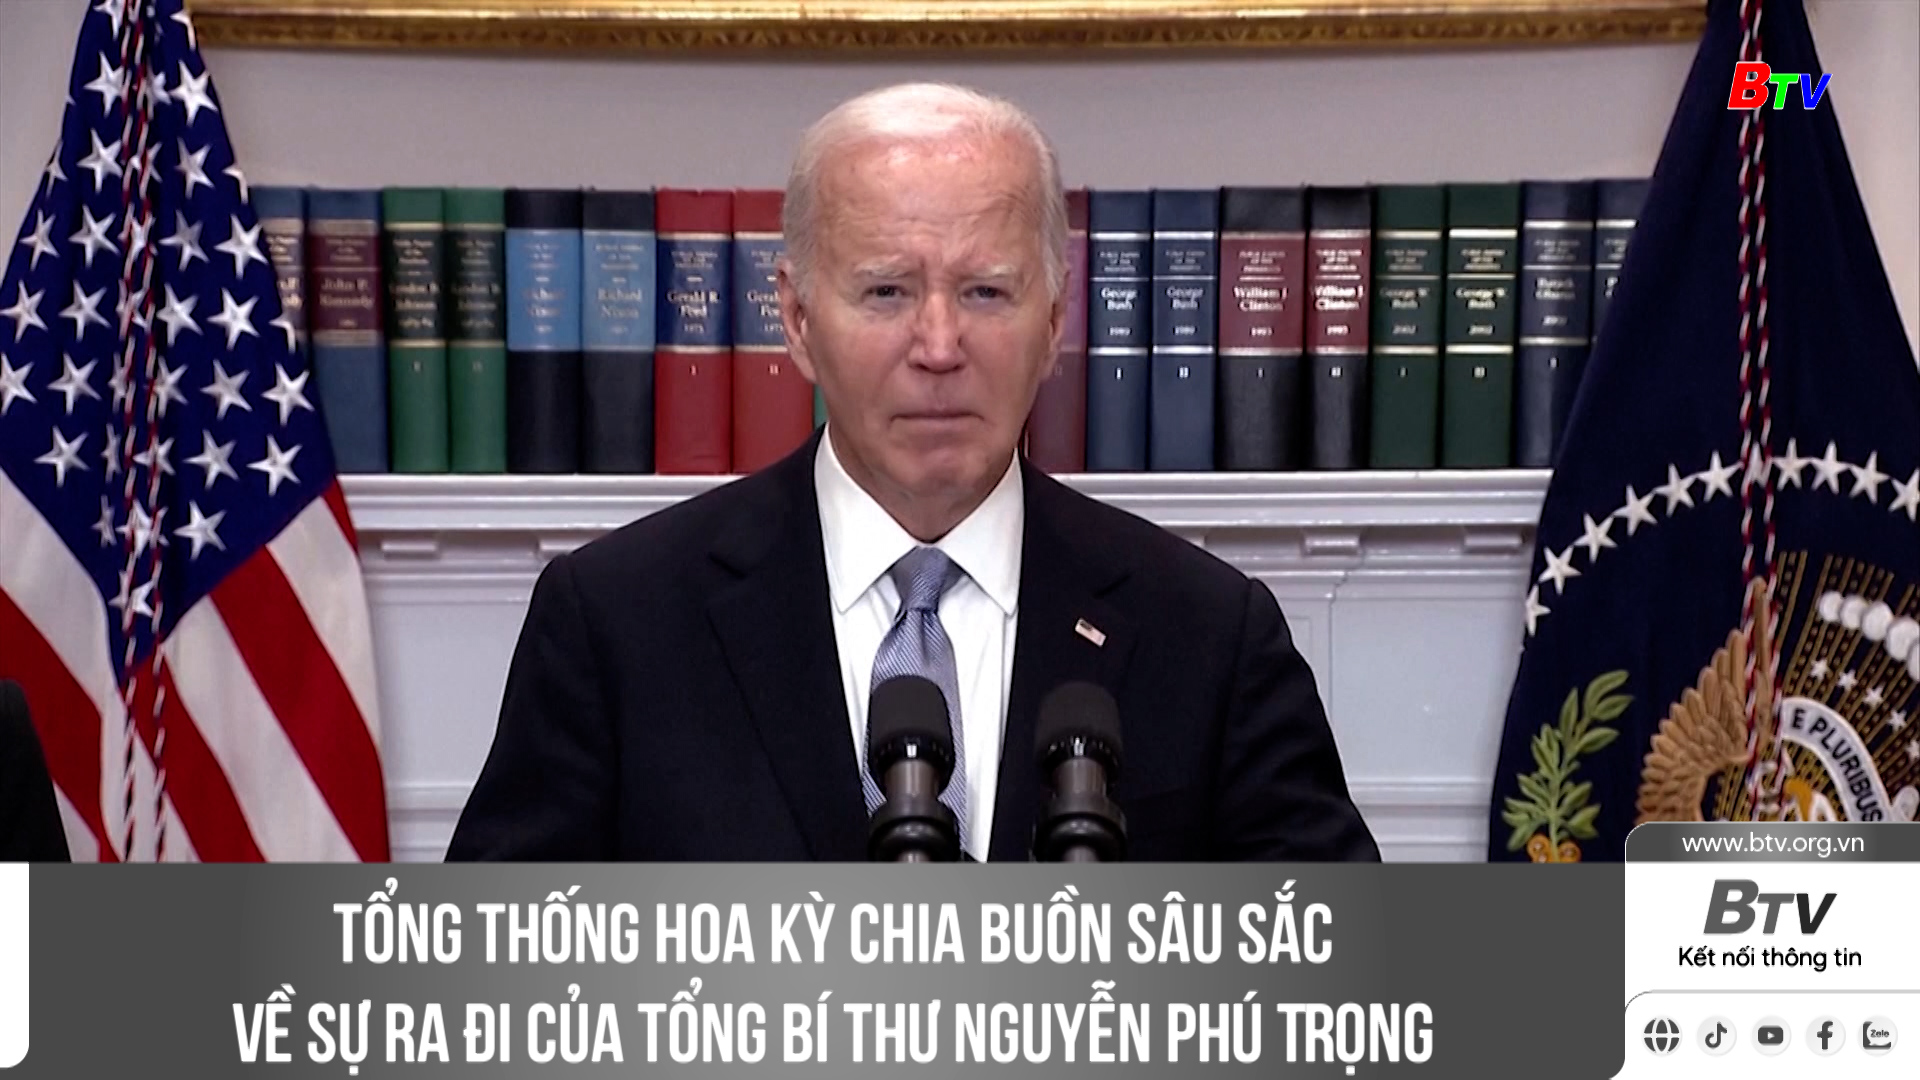 Tổng thống Hoa Kỳ chia buồn sâu sắc về sự ra đi của Tổng Bí thư Nguyễn Phú Trọng